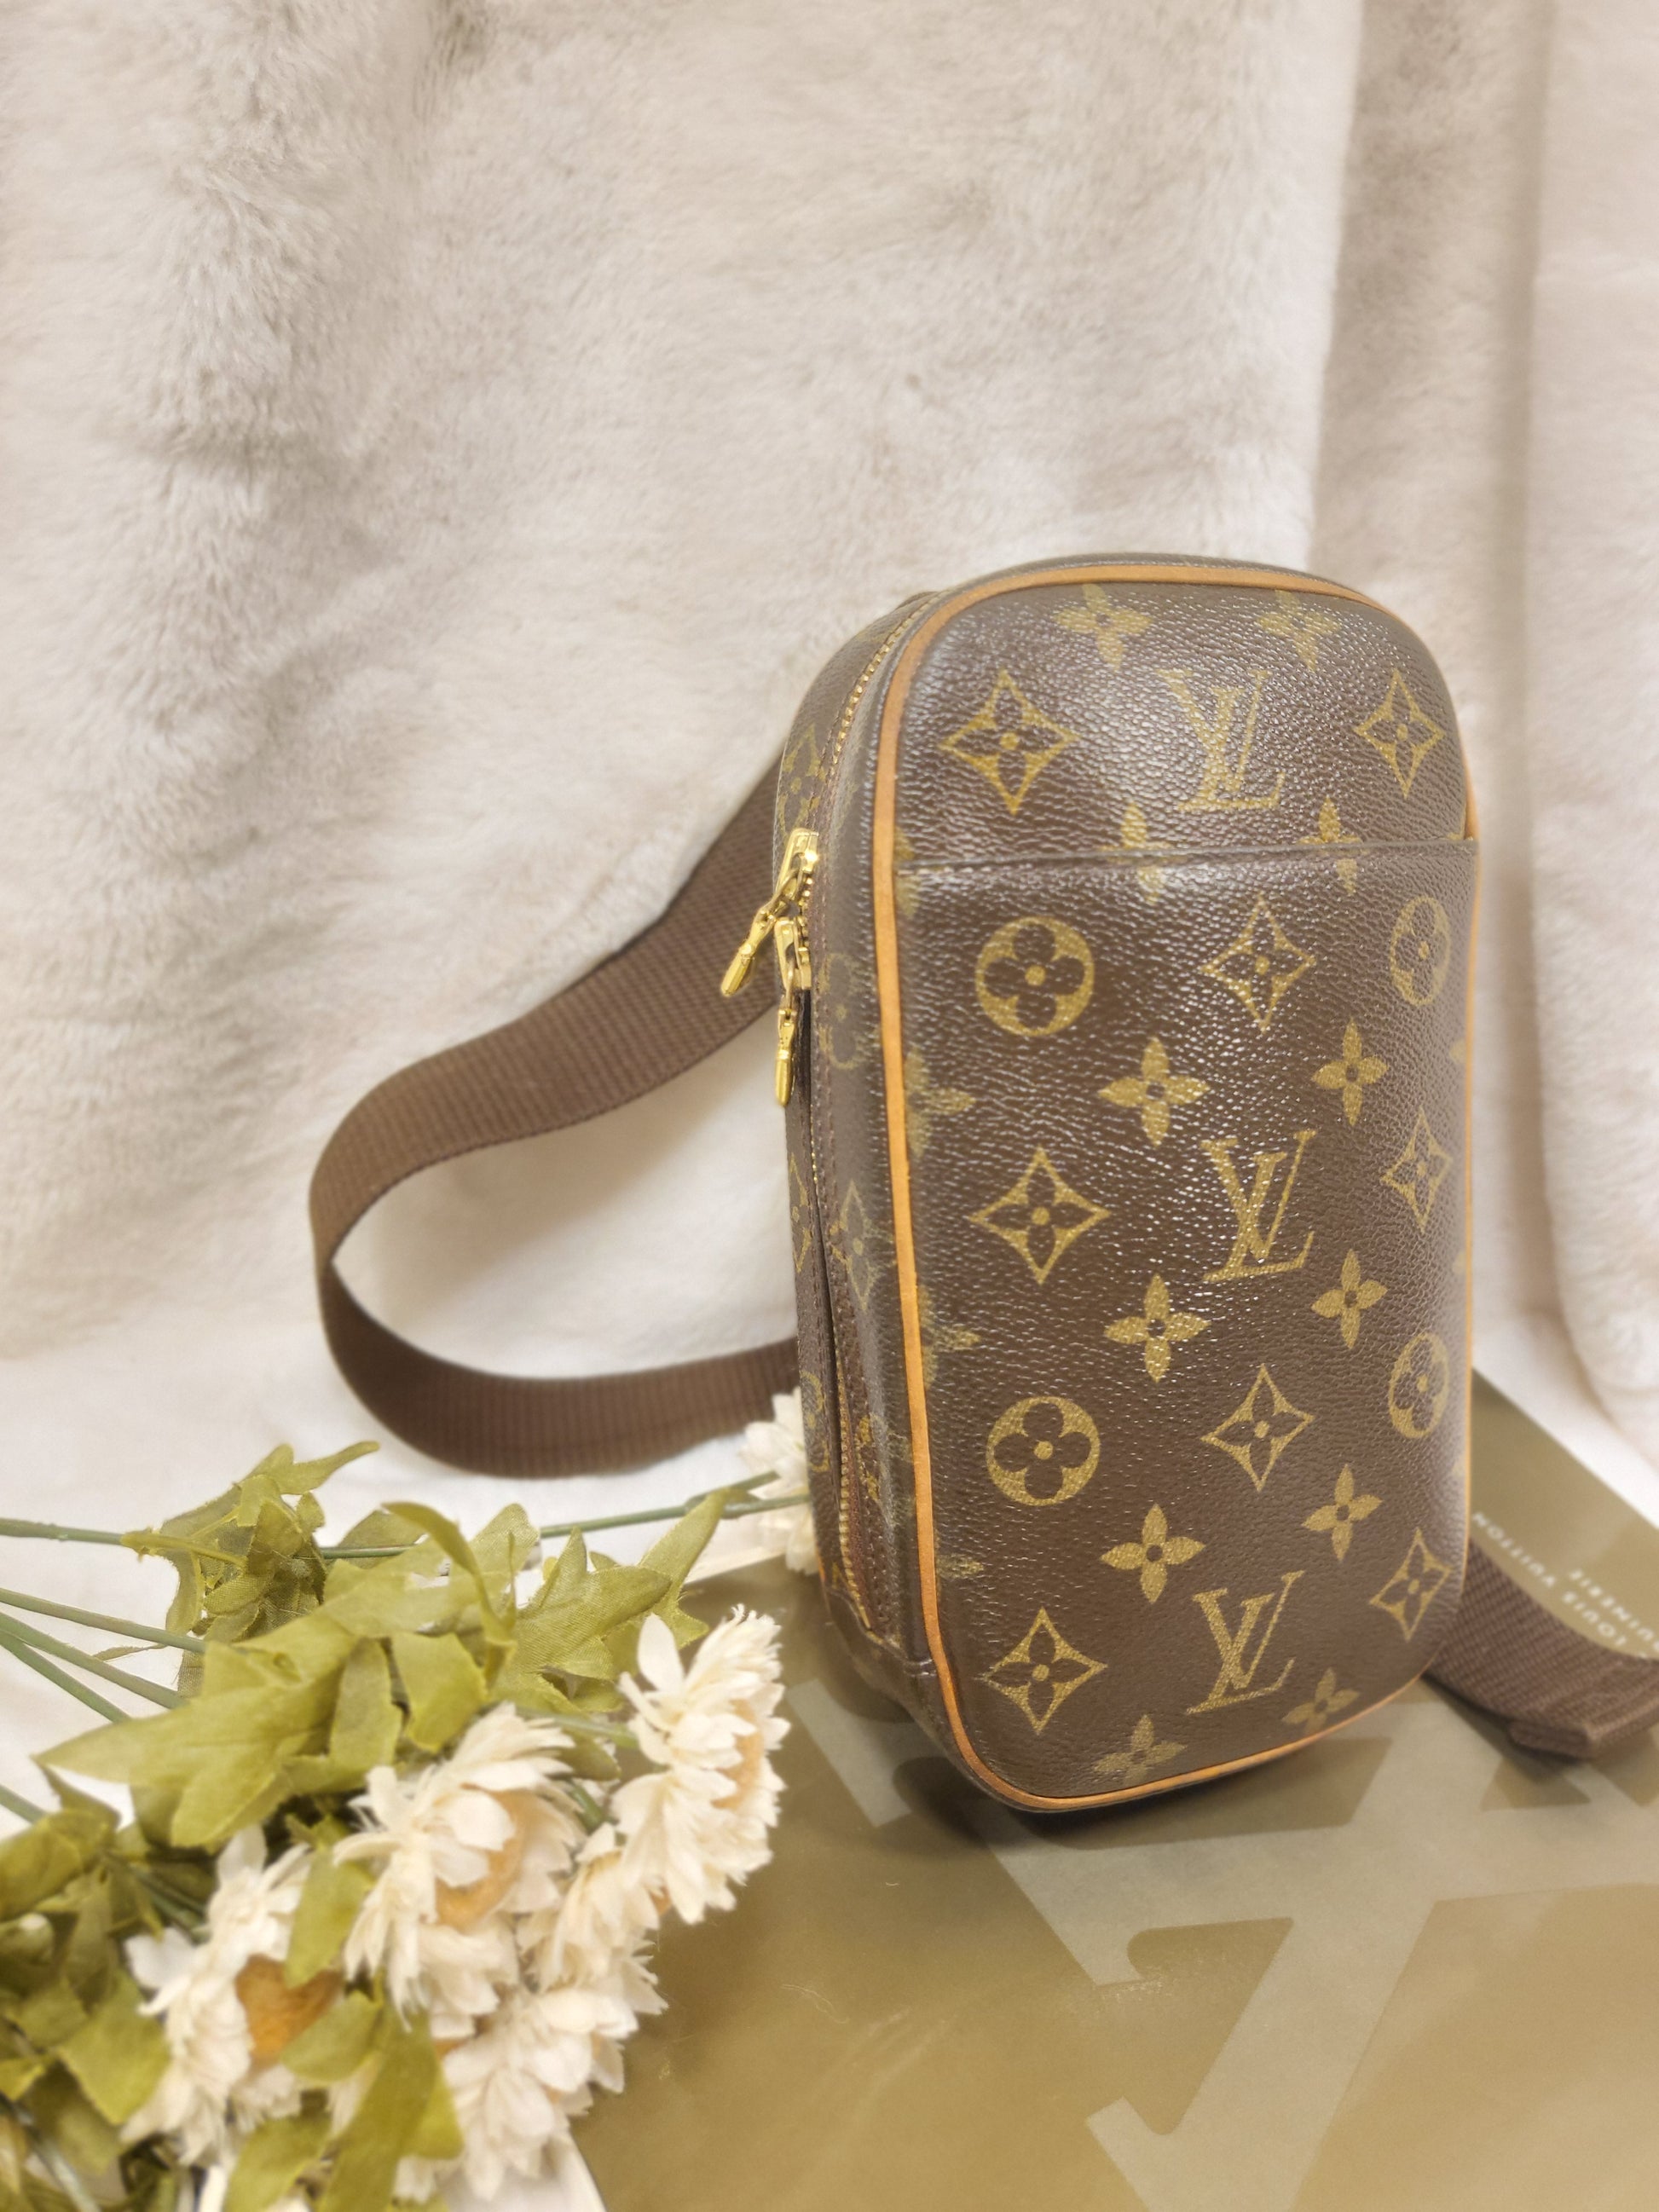 Authentic pre-owned Louis Vuitton Pochette Gange bum bag